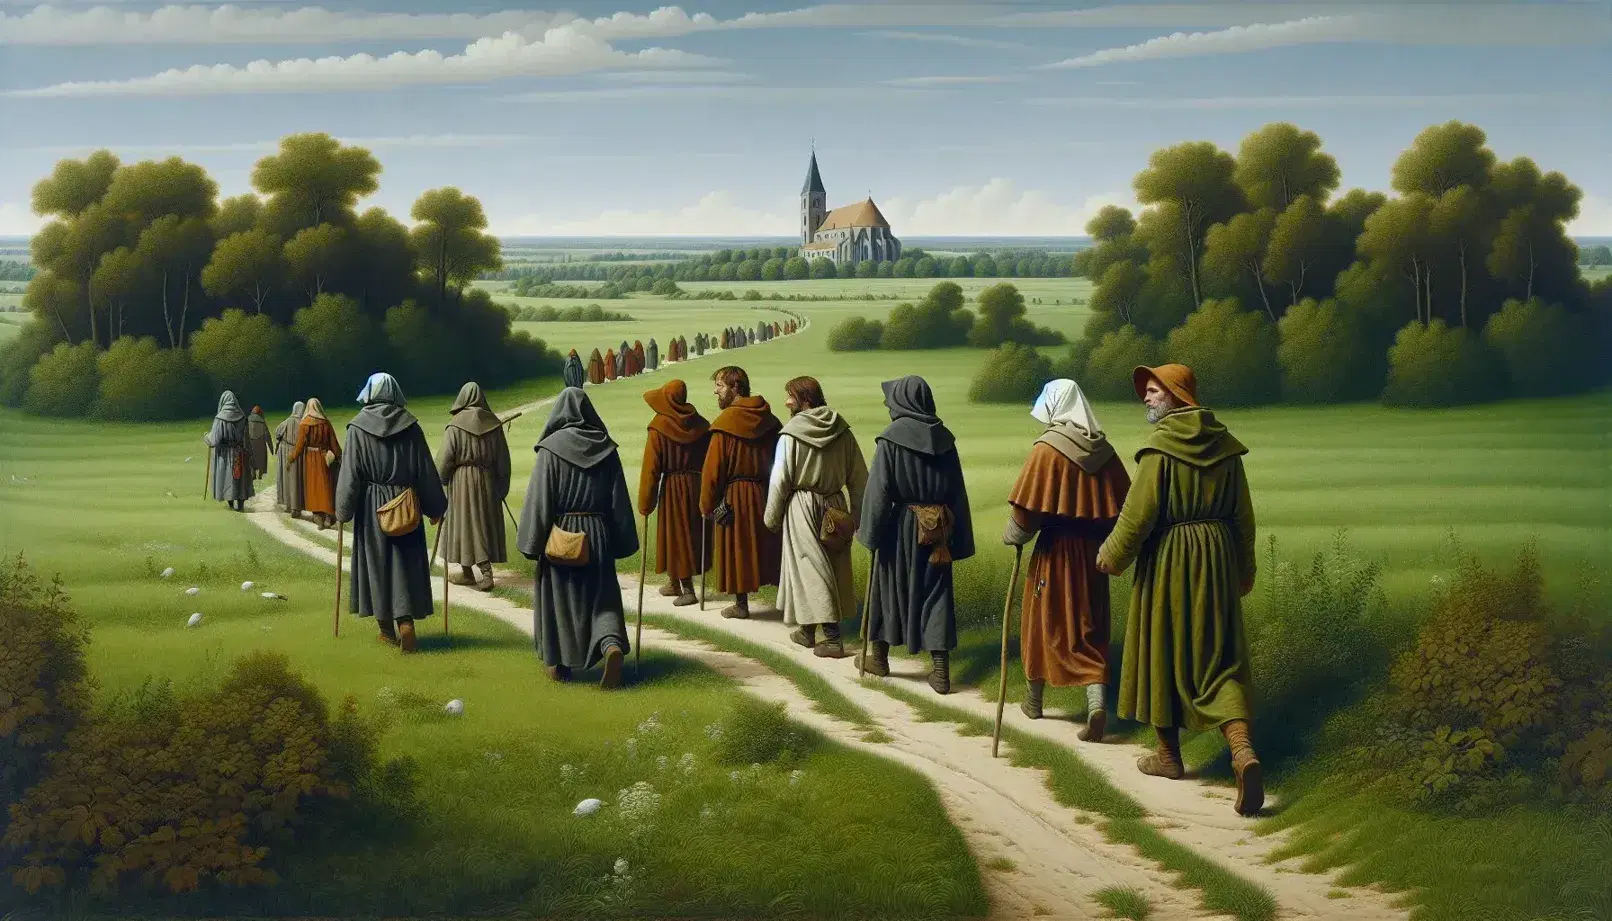 Gruppo di pellegrini medievali in cammino su sentiero campestre verso chiesa in lontananza, vestiti semplici, bastoni da viaggio e natura verde.